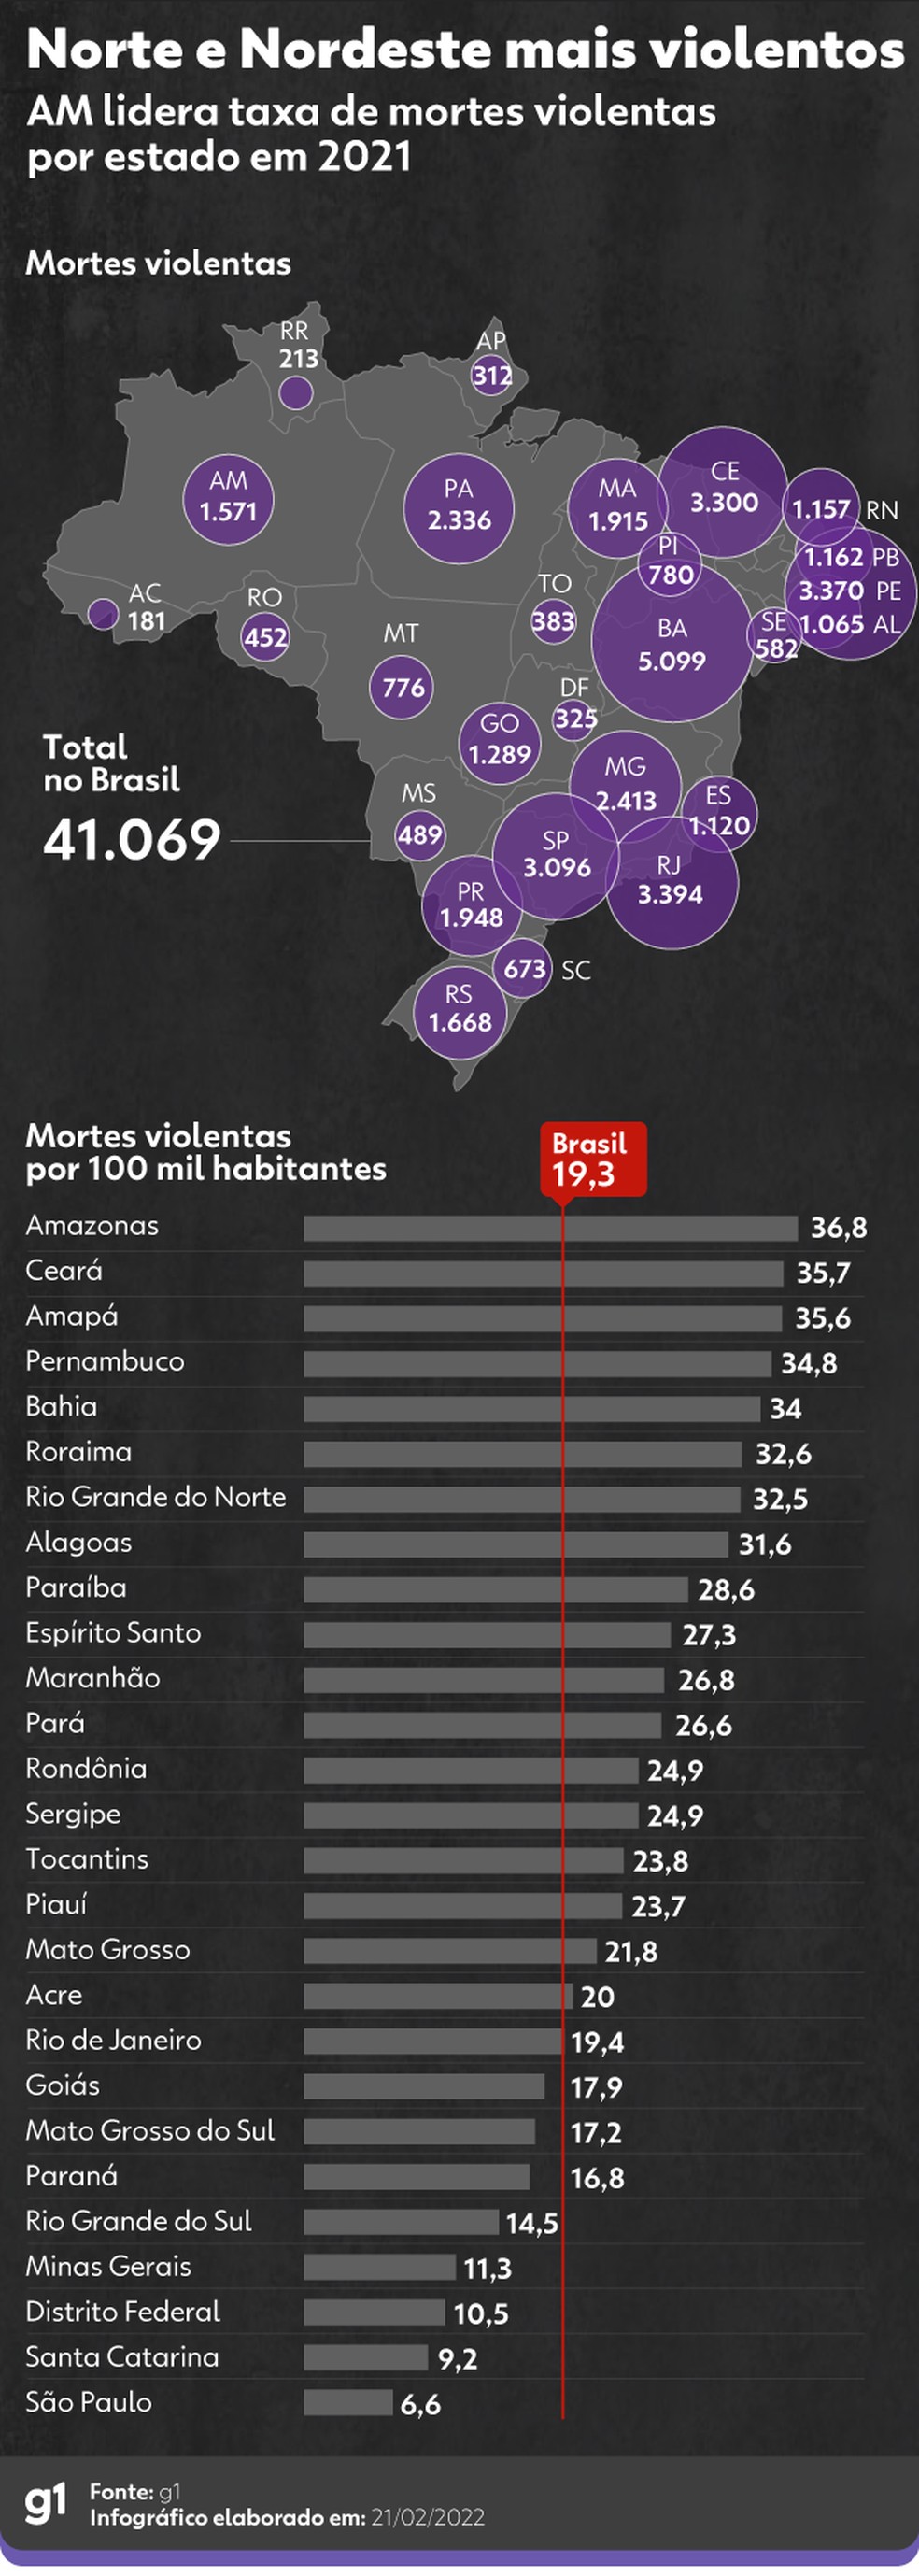 Qual foi o ano mais violento no Brasil?